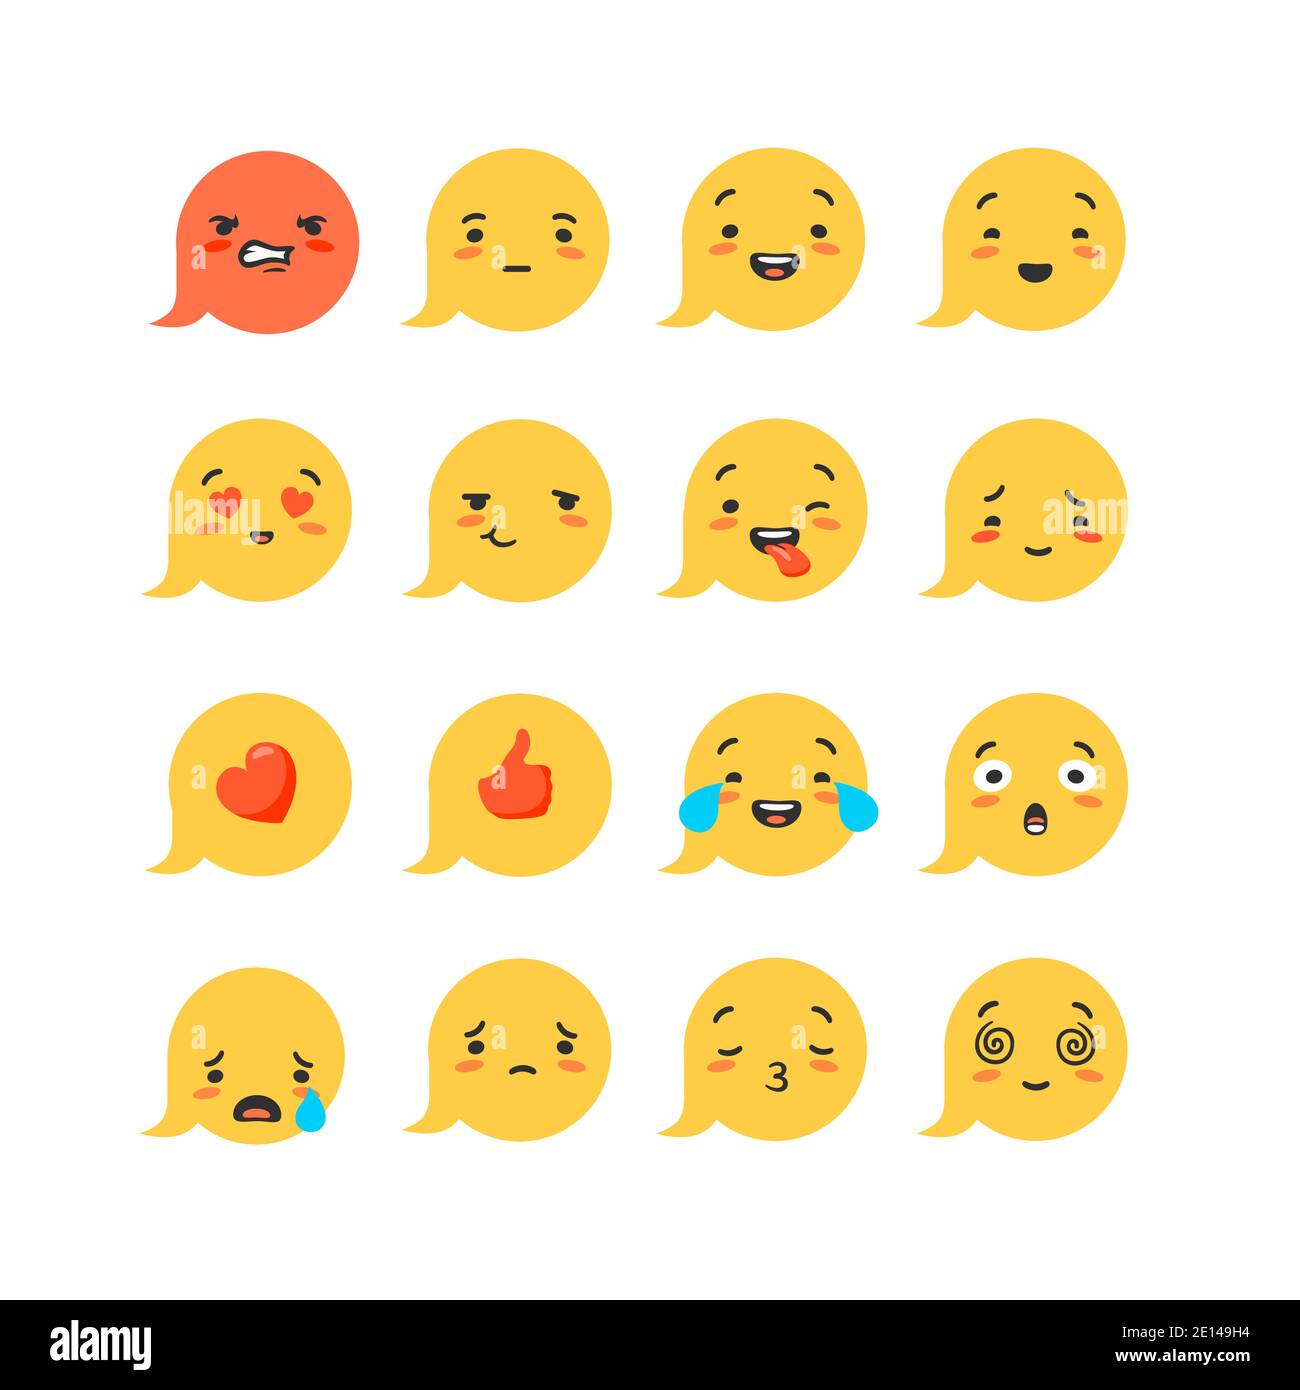 Emoticon - Các biểu tượng cảm xúc giờ đây đã trở thành một phần không thể thiếu trong cuộc sống của chúng ta. Xem hình ảnh liên quan để khám phá thế giới đầy màu sắc của các emoticon.